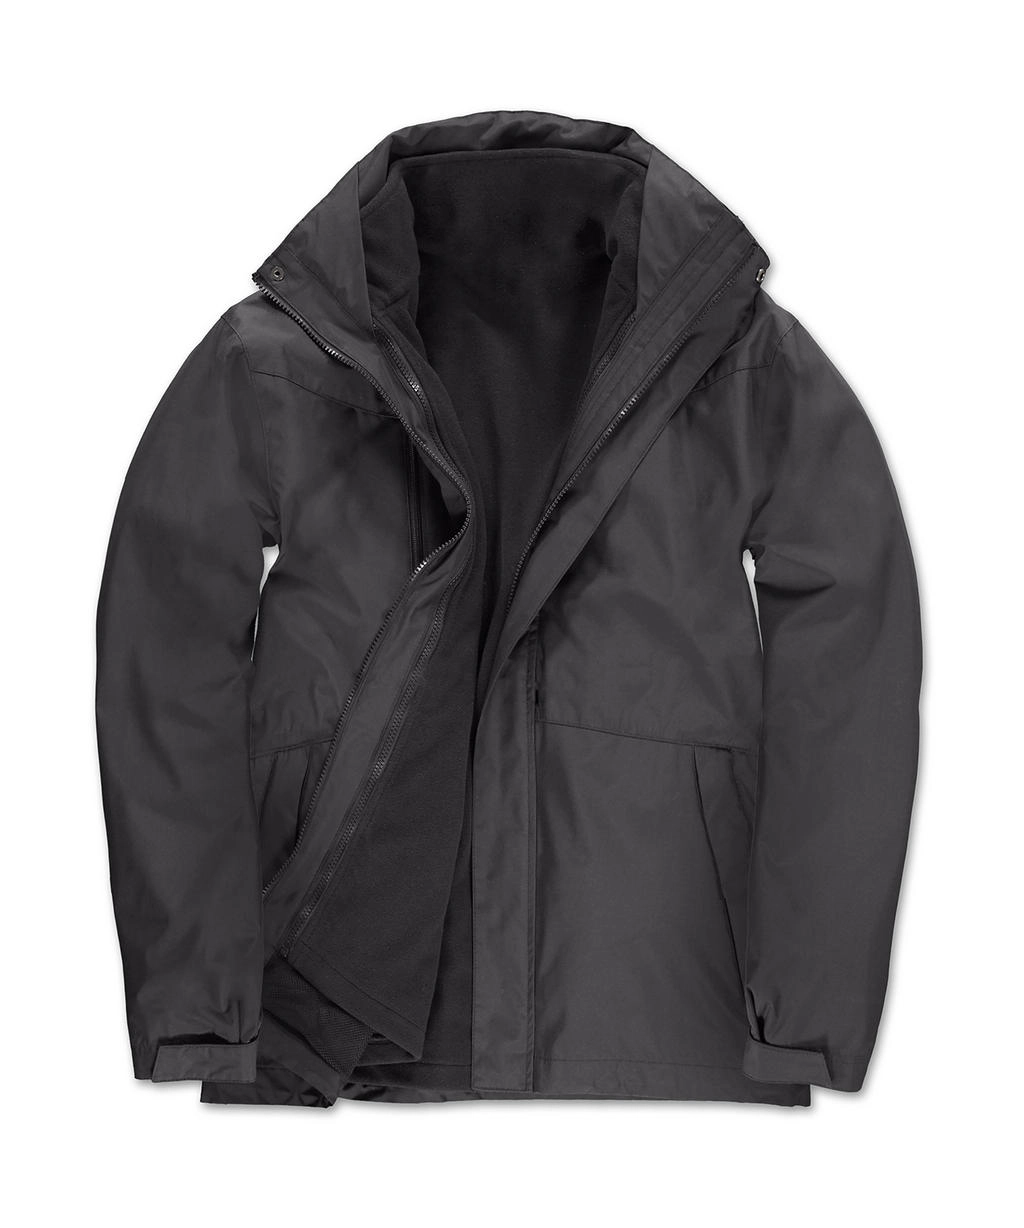 Corporate 3-in-1 Jacket zum Besticken und Bedrucken in der Farbe Dark Grey mit Ihren Logo, Schriftzug oder Motiv.